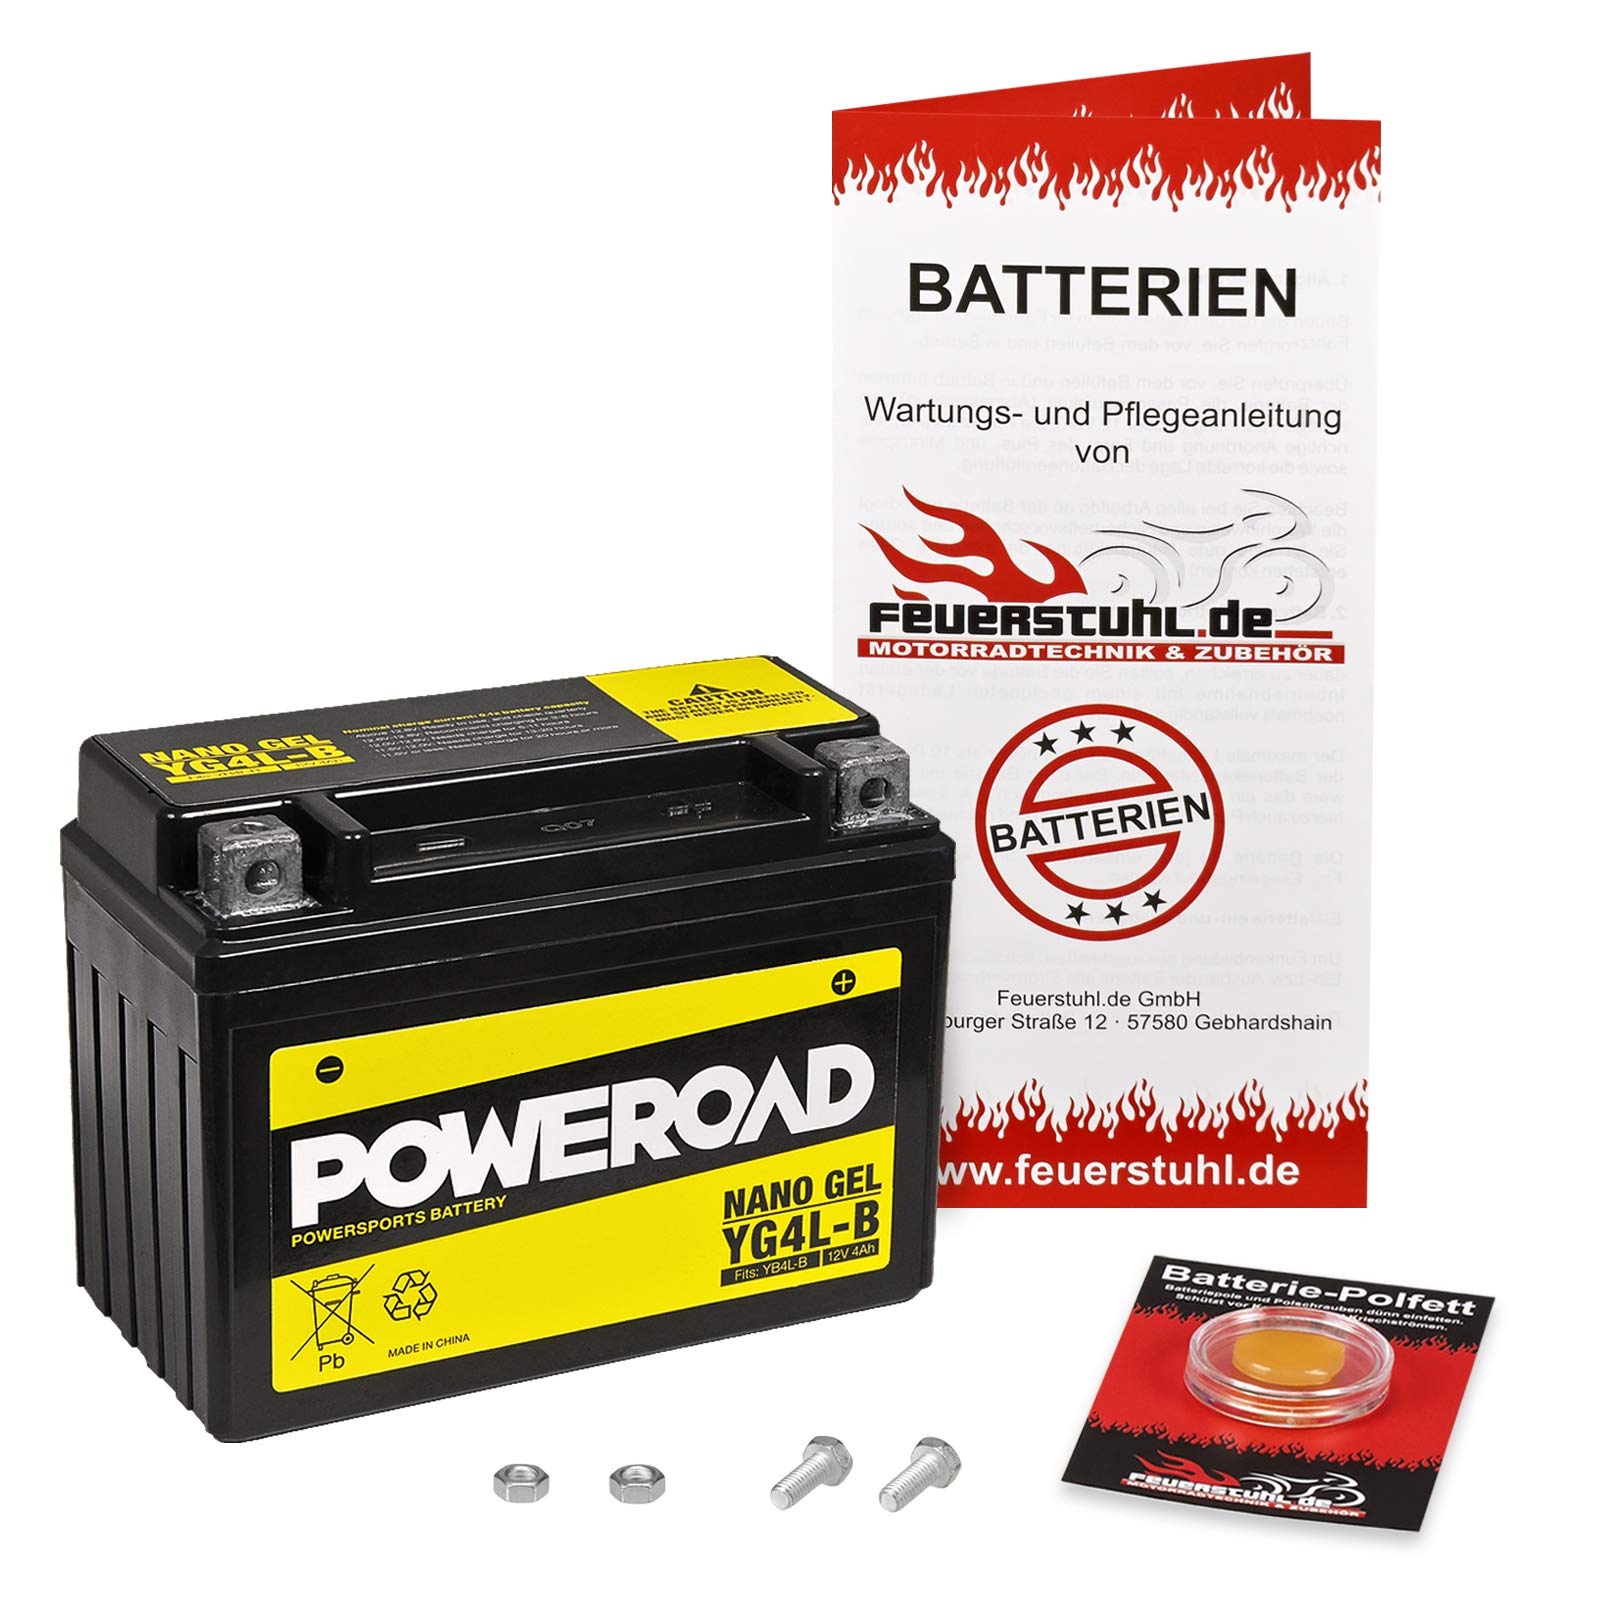 Gel-Batterie für Suzuki RG 80 Gamma (NC11A) wartungsfrei, einbaufertig, startklar, inkl. 7,50€ Pfand von Feuerstuhl.de GmbH